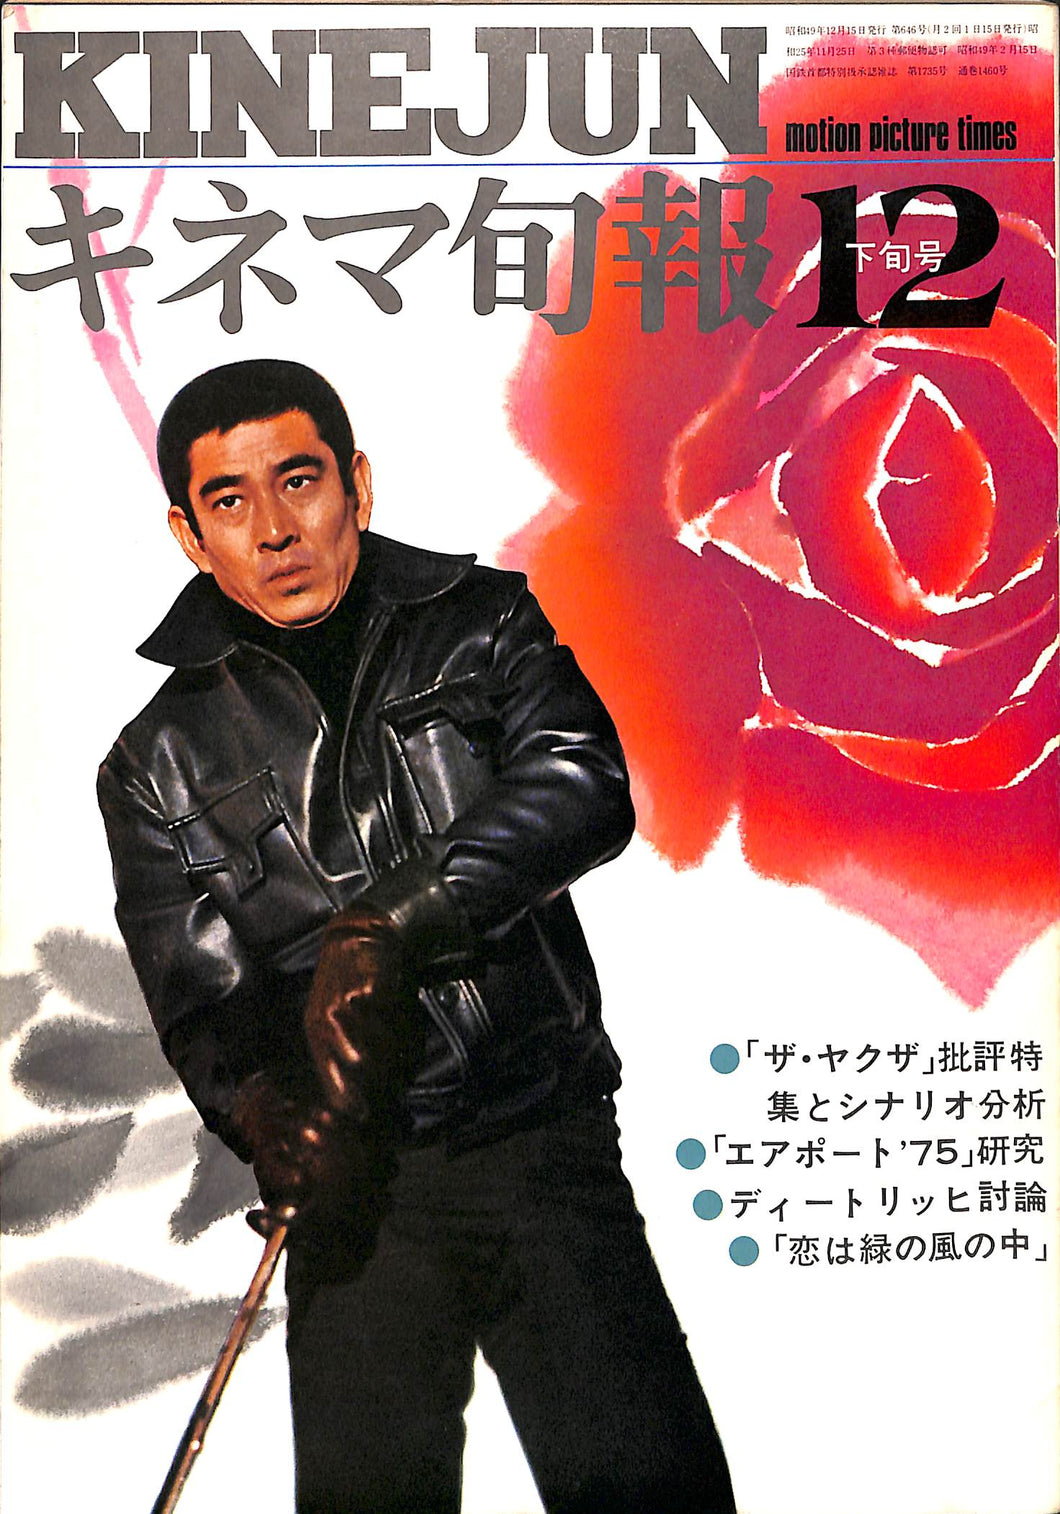 キネマ旬報 1974年 12月下旬号 表紙の映画 : ザ・ヤクザ (高倉健)